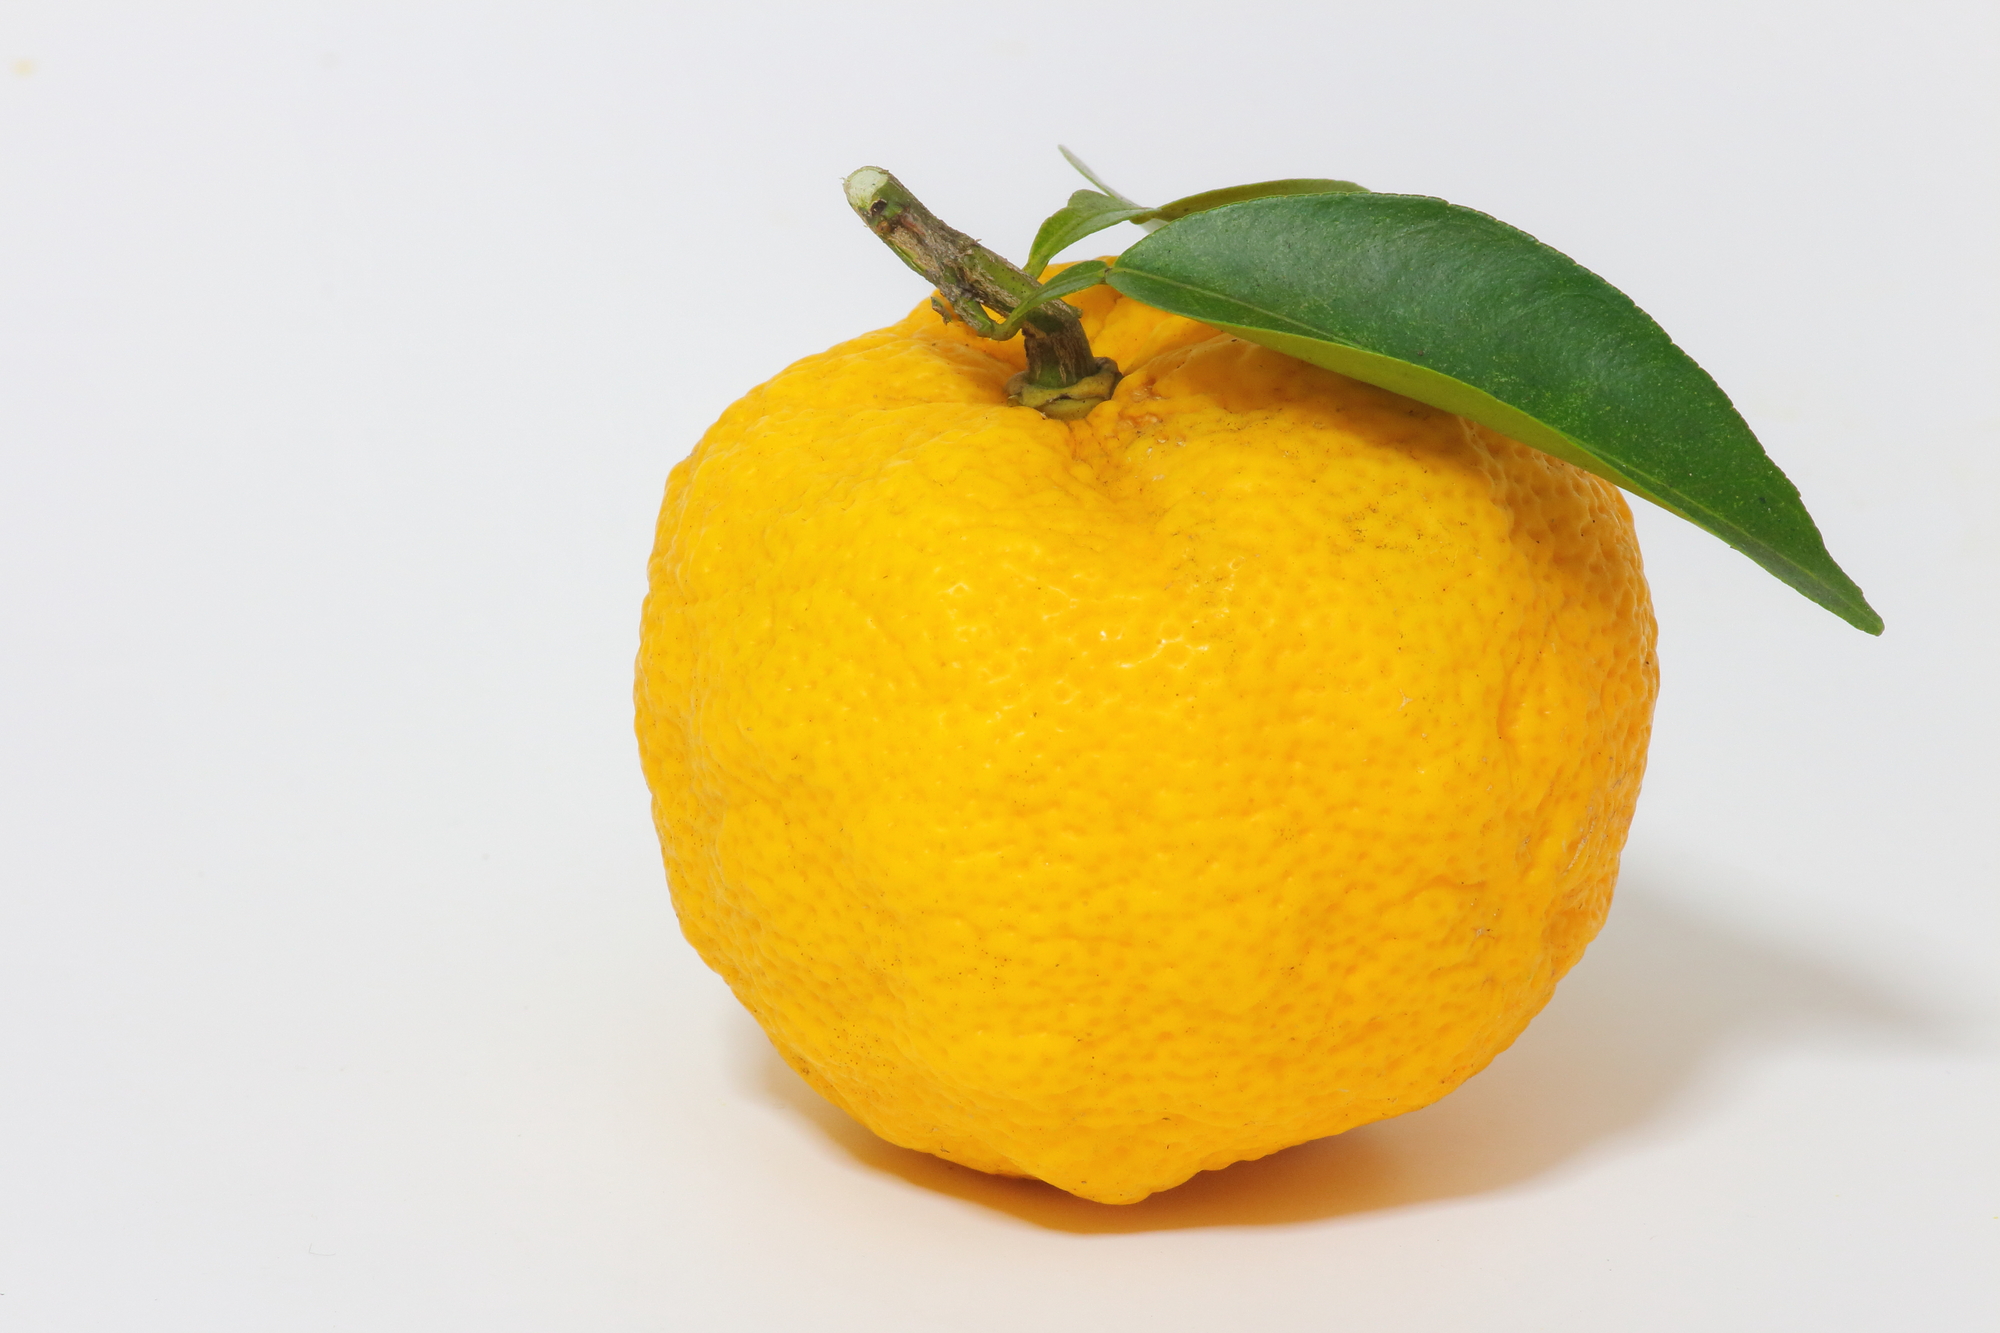 ゆず 柚子 を冷凍 保存 解凍調理する方法 専門家監修の食品冷凍情報サイト おいしい冷凍研究所